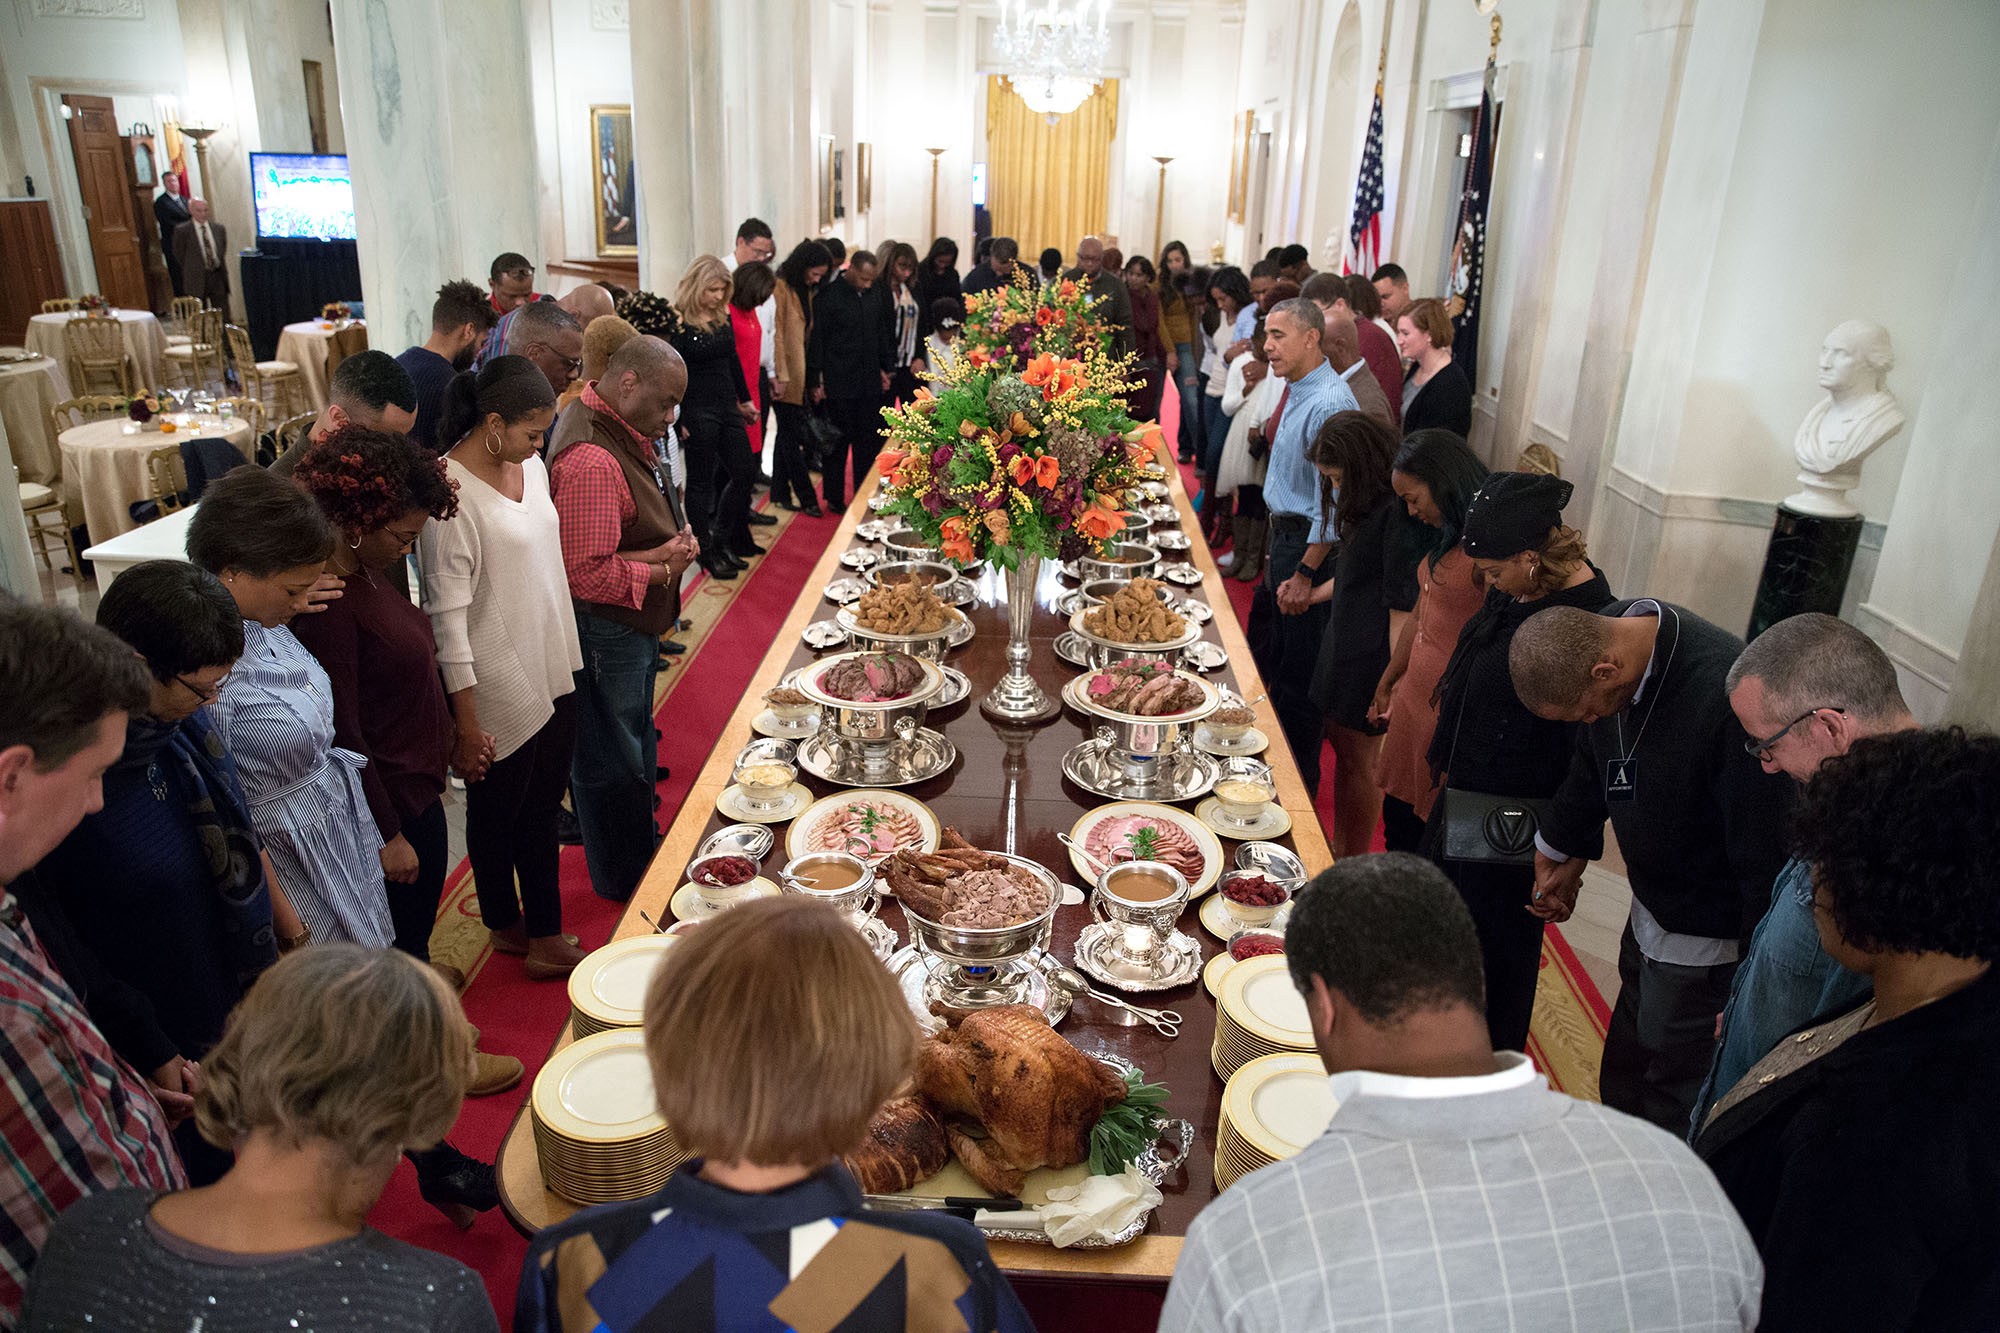 โอบามานำสวดมนต์ก่อนหน้างานเลี้ยงอาหารค่ำแก่ครอบครัวและเพื่อนฝูงของเจ้าหน้าที่ทำเนียบขาว ในเทศกาลวันขอบคุณพระเจ้า เมื่อ 24 พฤศจิกายน 2559 / Official White House Photo by Pete Souza